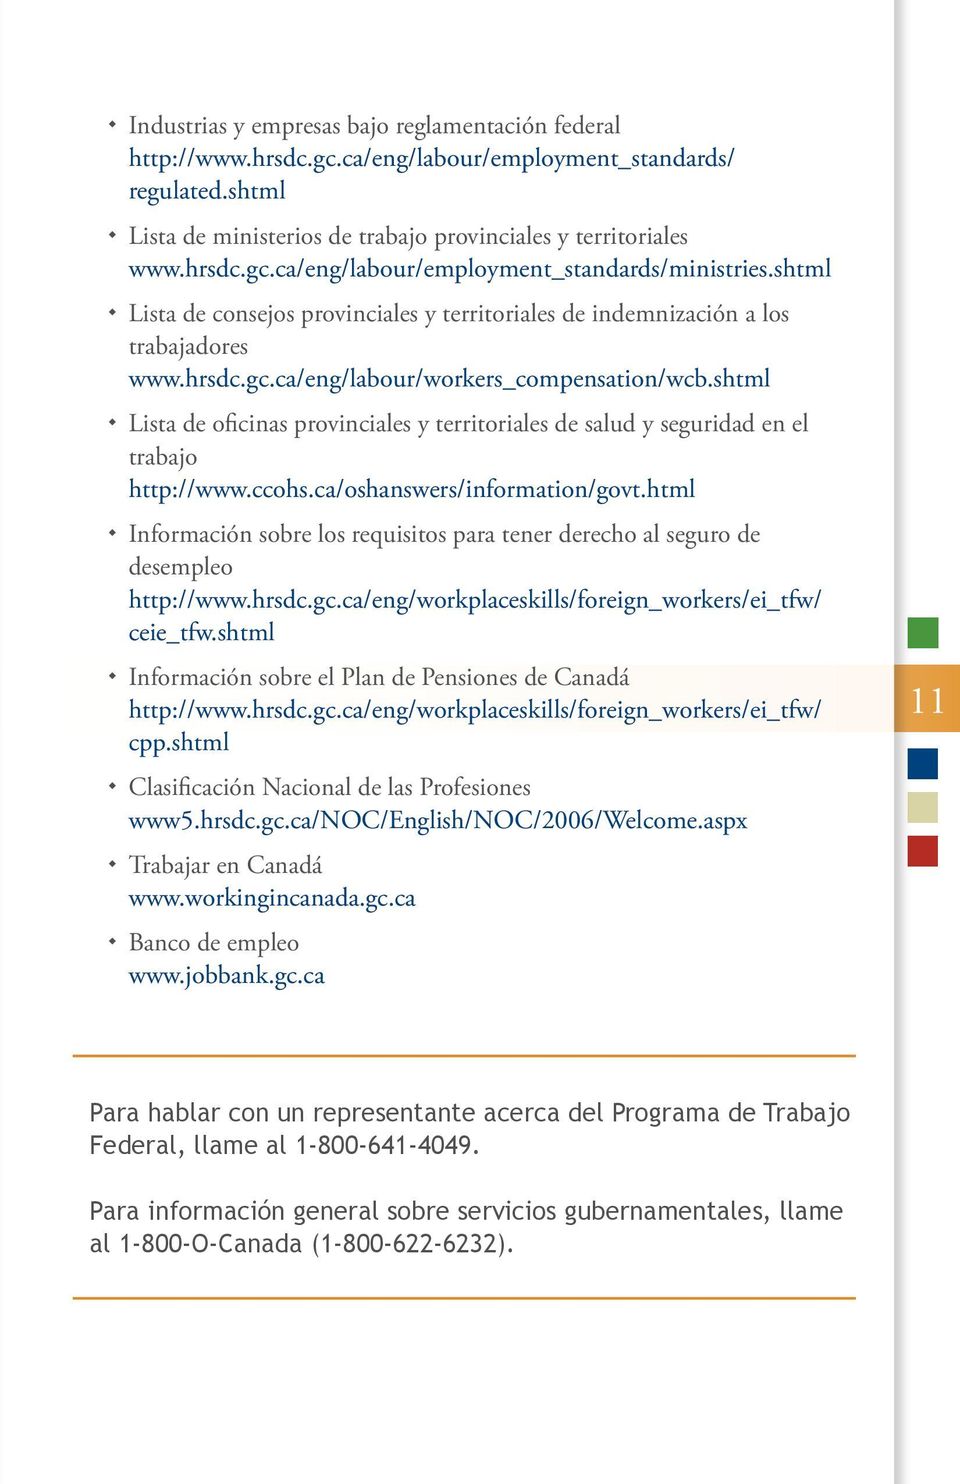 shtml Lista de oficinas provinciales y territoriales de salud y seguridad en el trabajo http://www.ccohs.ca/oshanswers/information/govt.